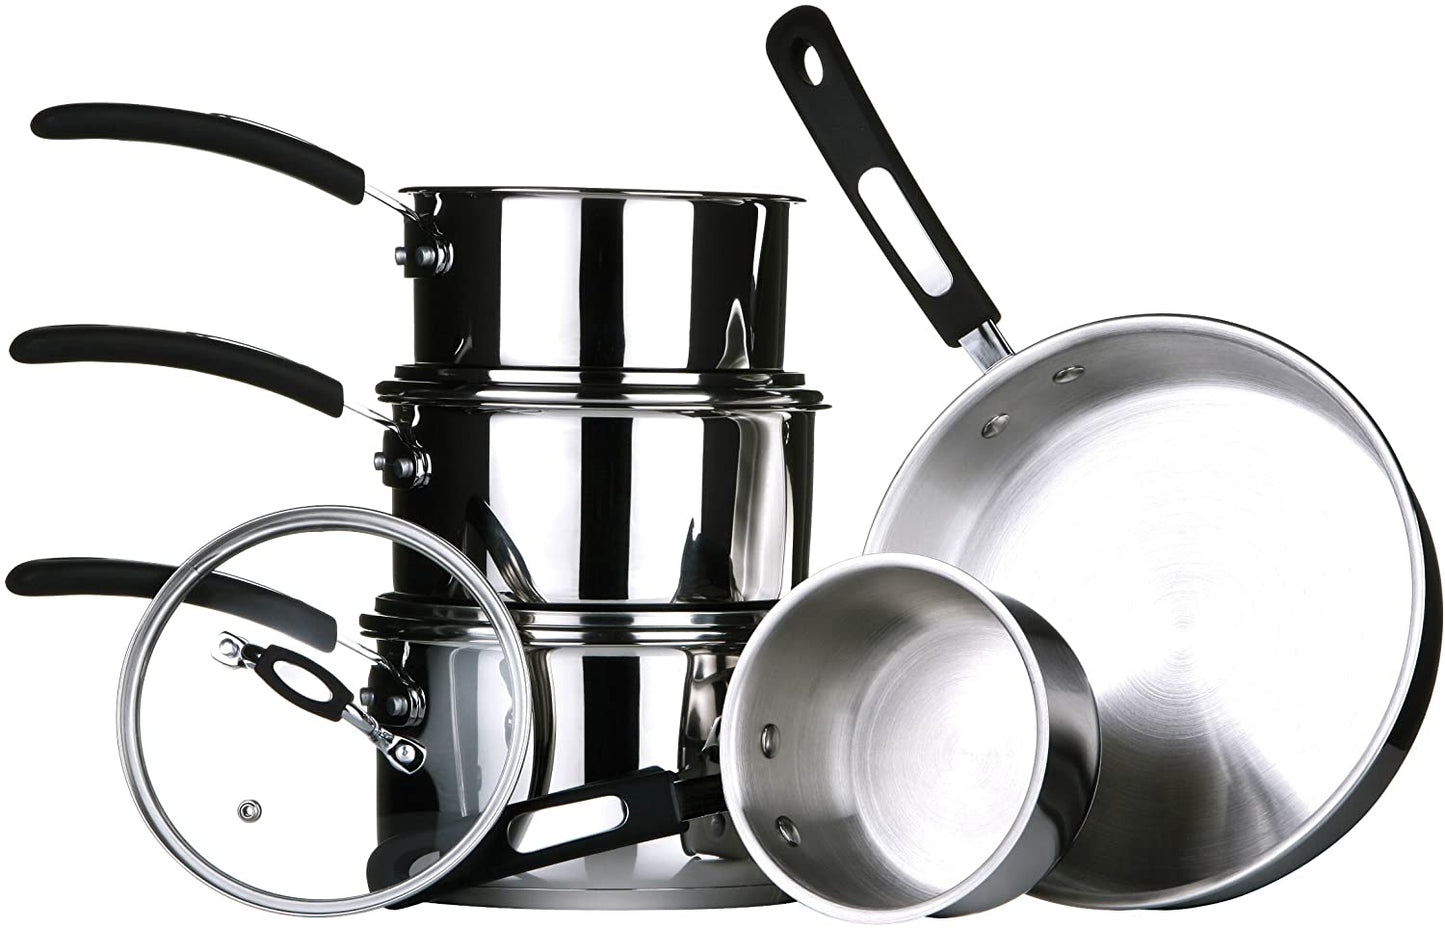 Tenzo S Ii Series 5Pc Cookware Set